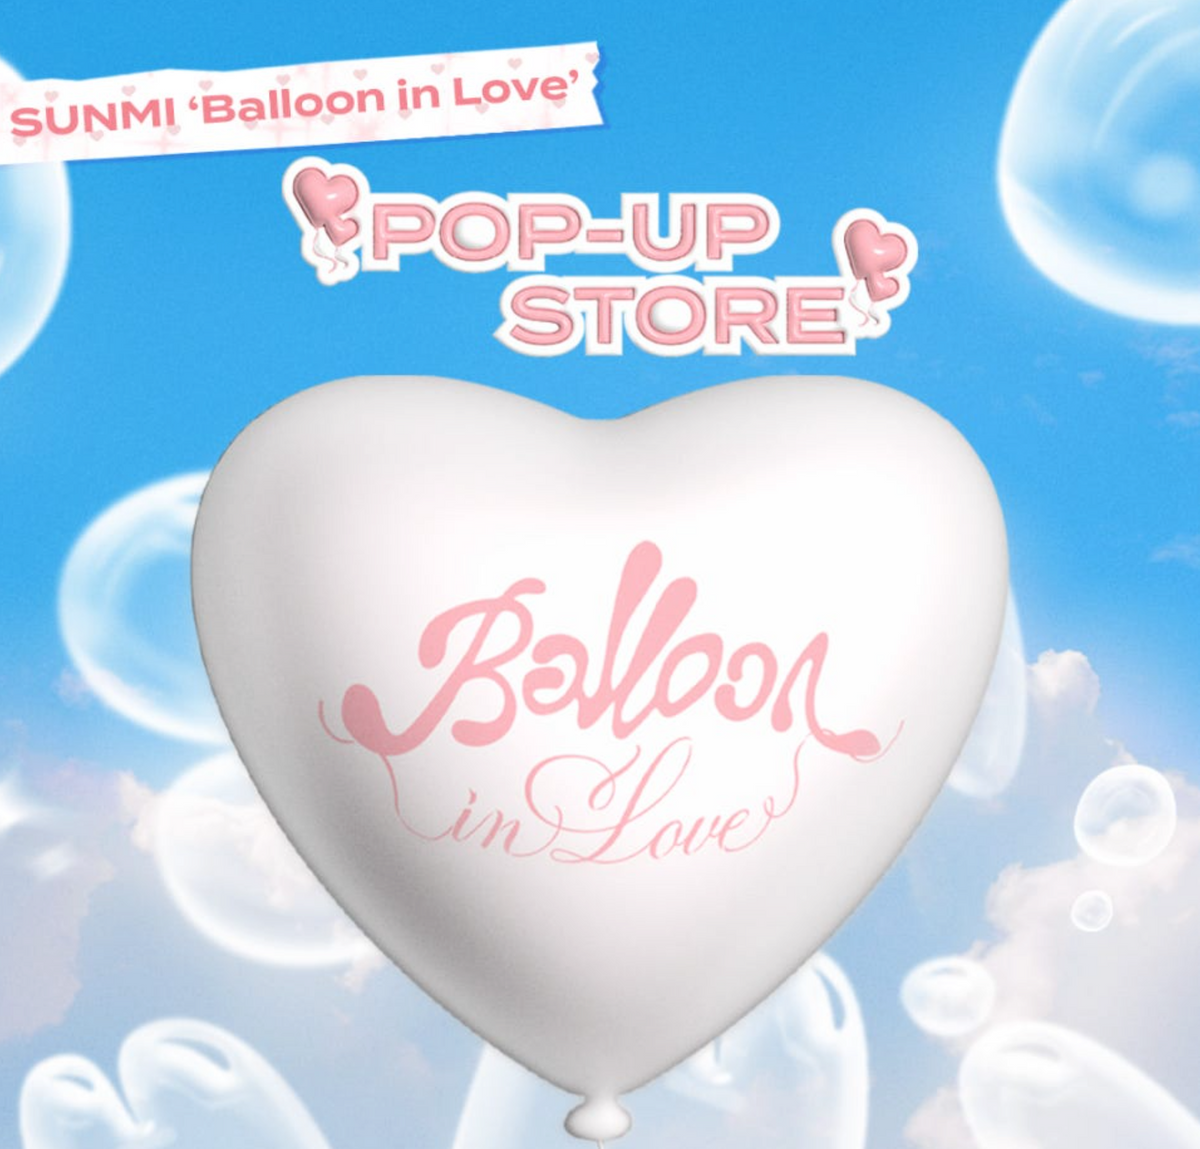 선미 팝업스토어 ‘Balloon in Love’